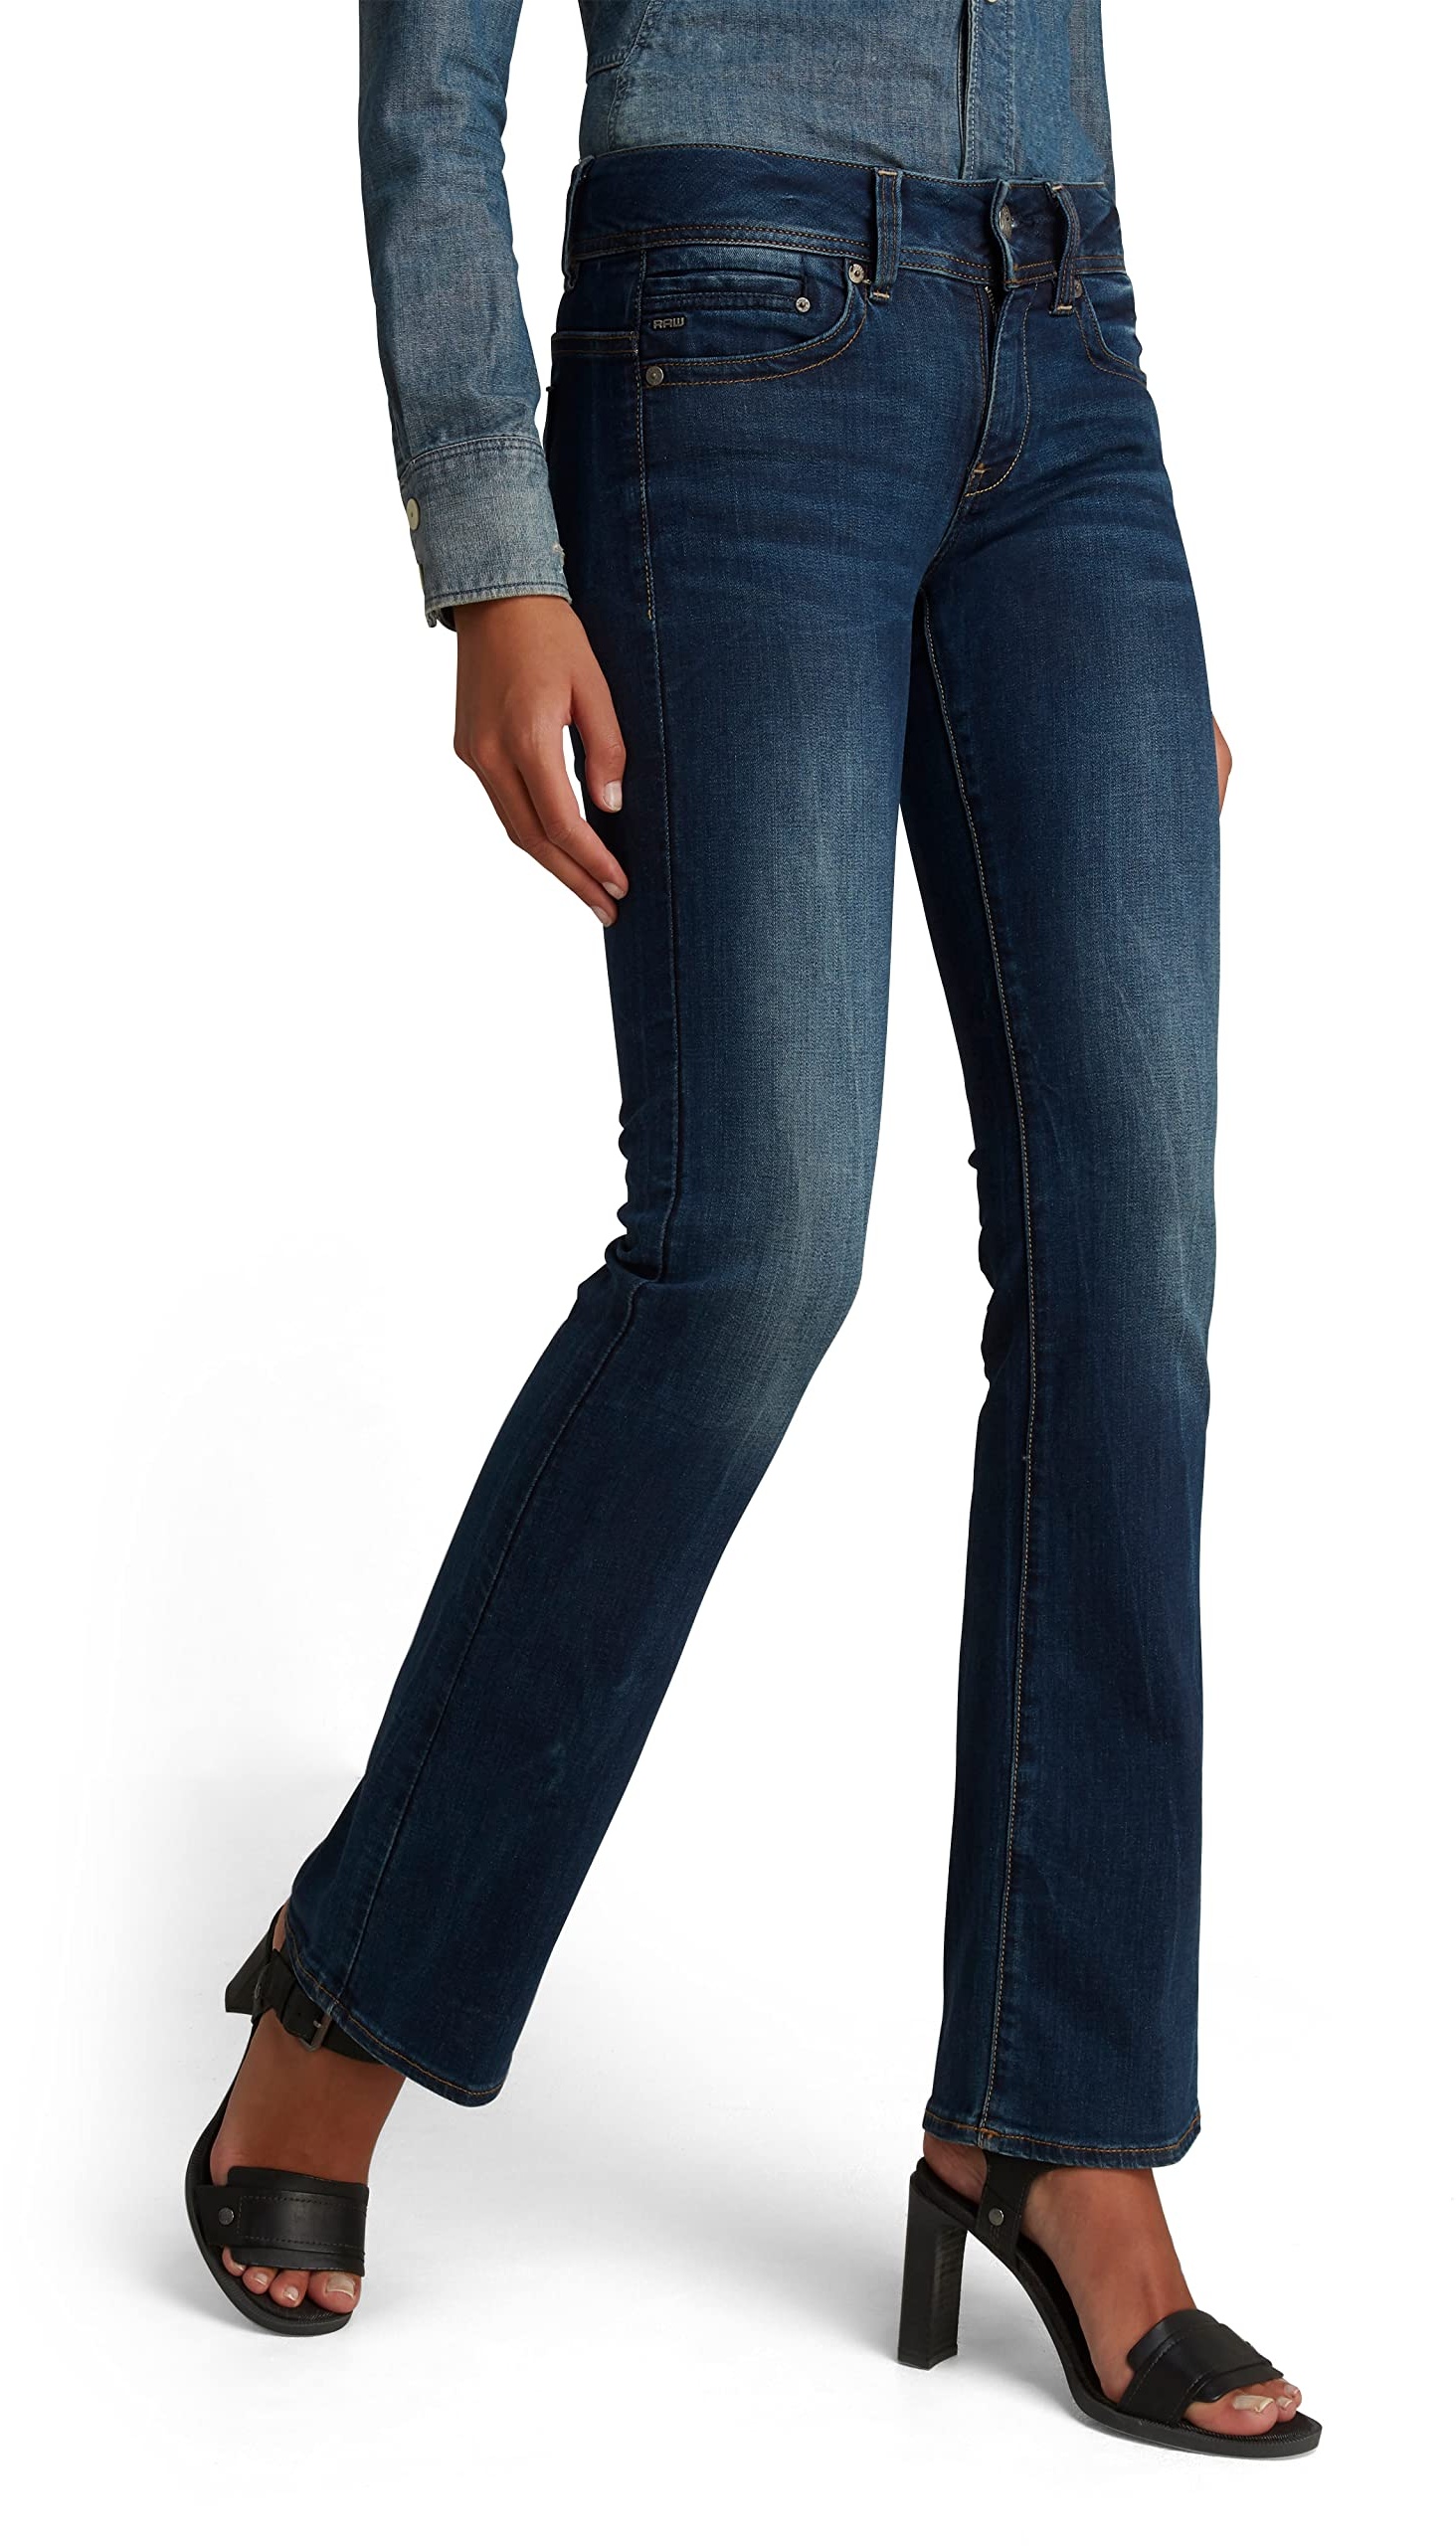 G-STAR RAW Damen Midge Bootcut Jeans, Blau (dk aged D01896-6553-89), 29W / 32L